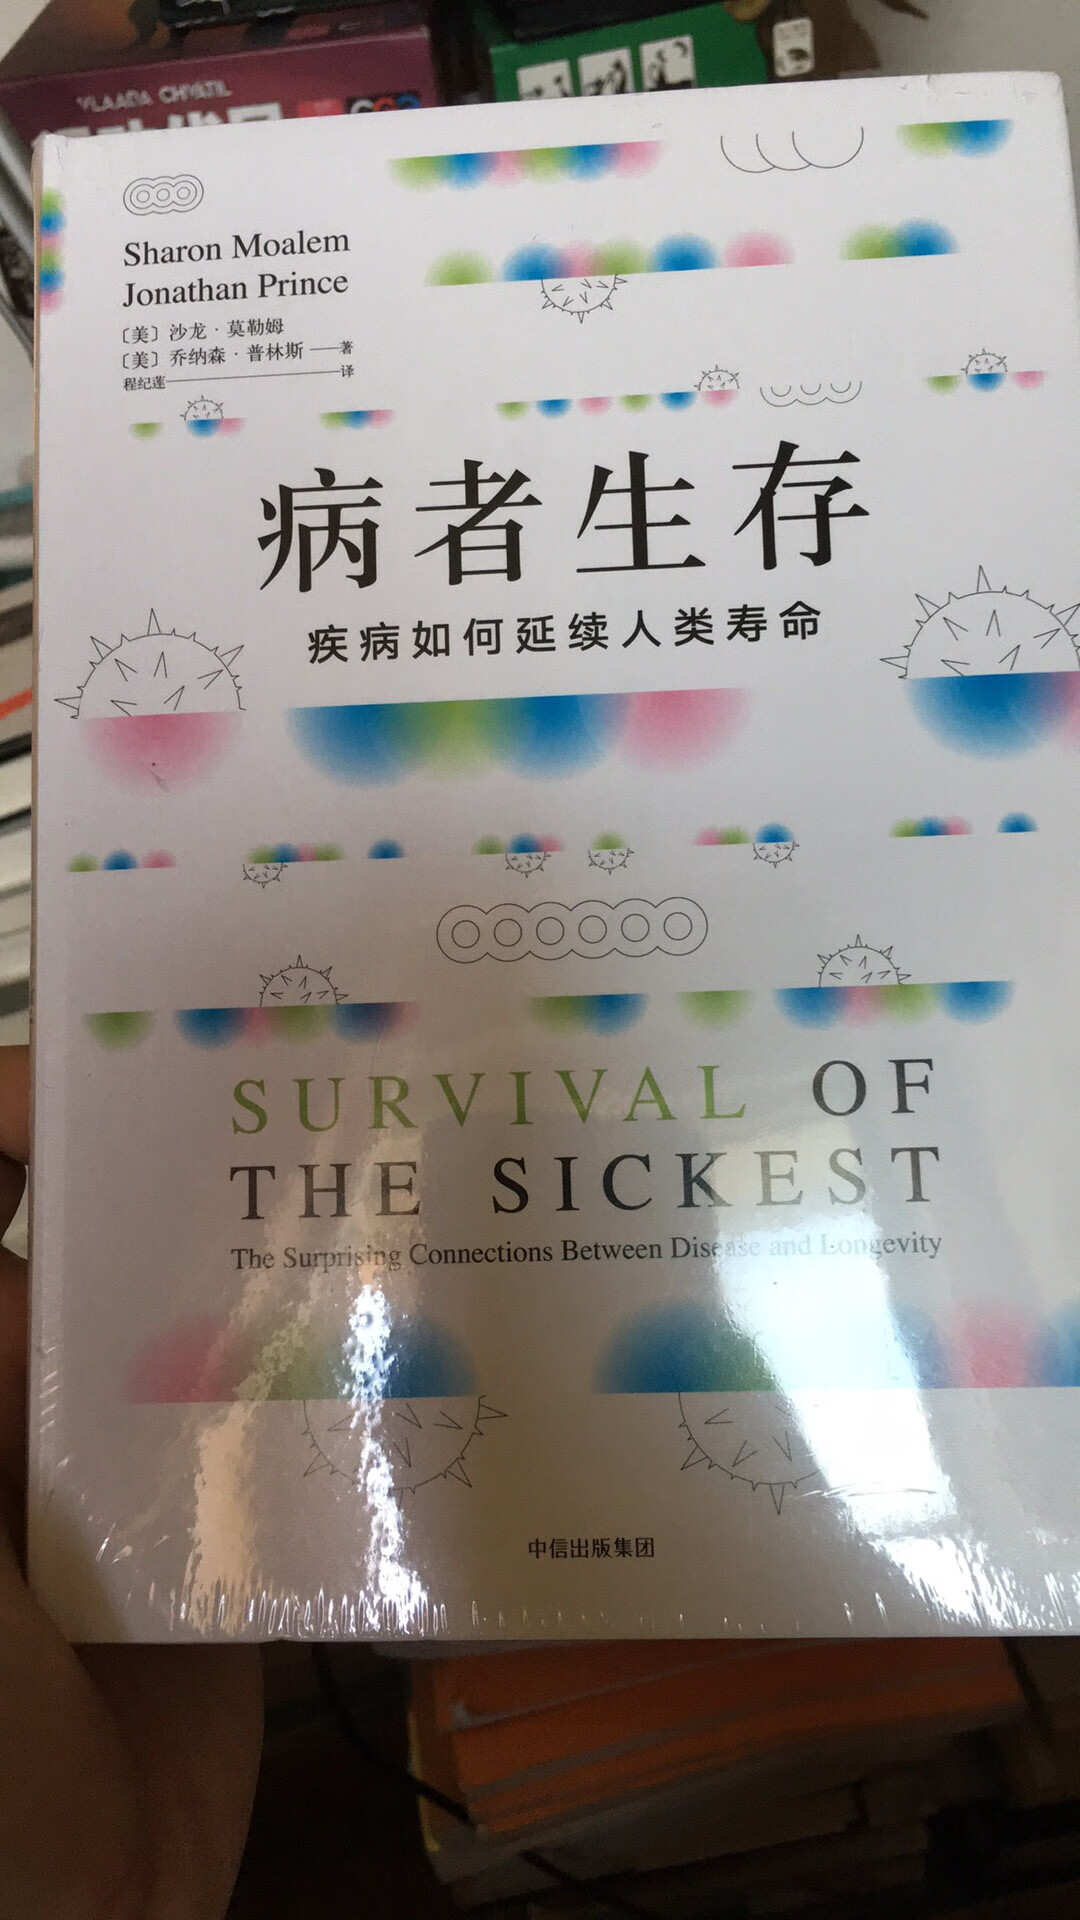 讲疾病的一本很棒的科普书